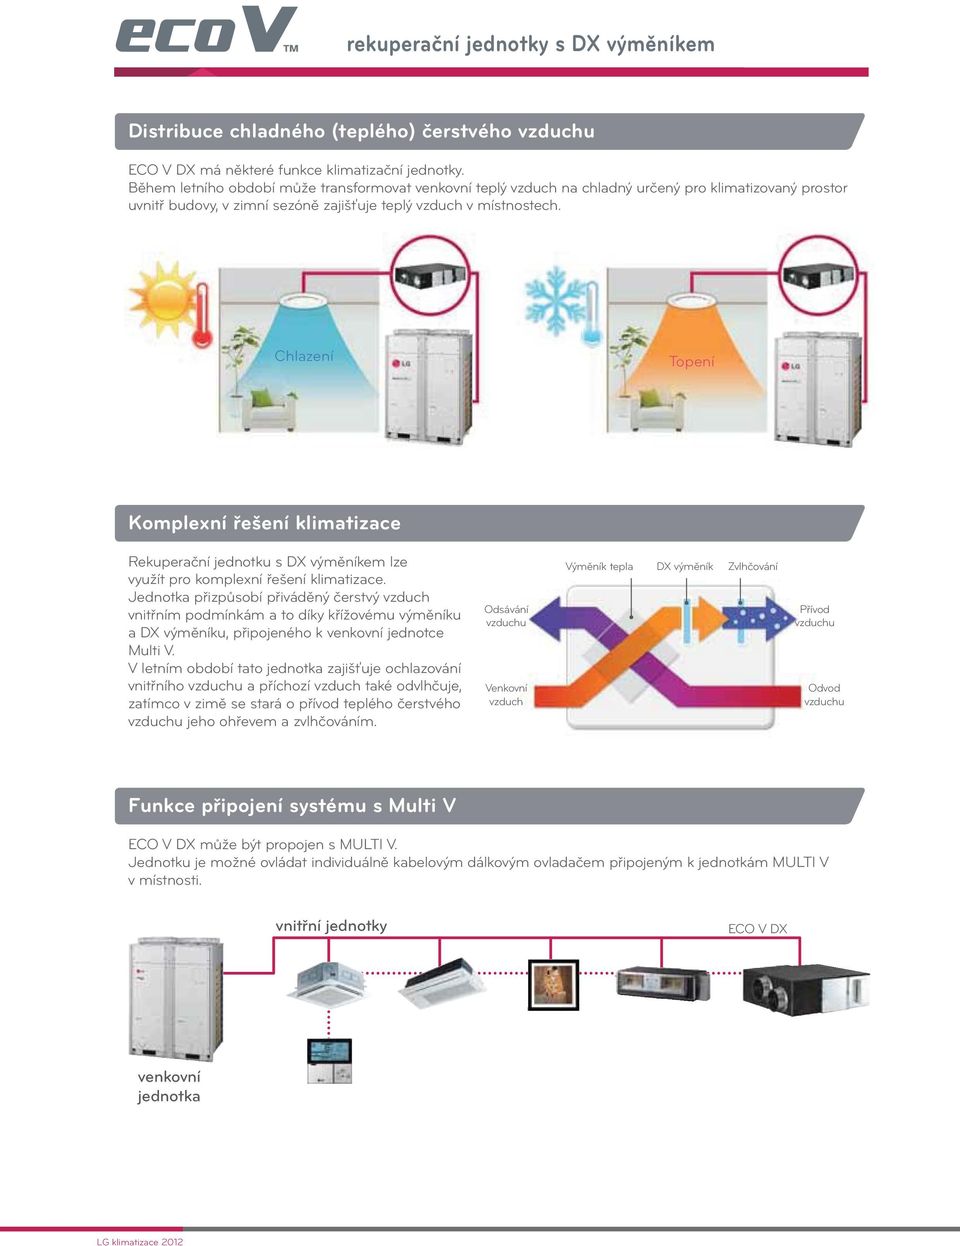 Chlazení Topení Komplexní řešení klimatizace Rekuperační jednotku s DX výměníkem lze využít pro komplexní řešení klimatizace.